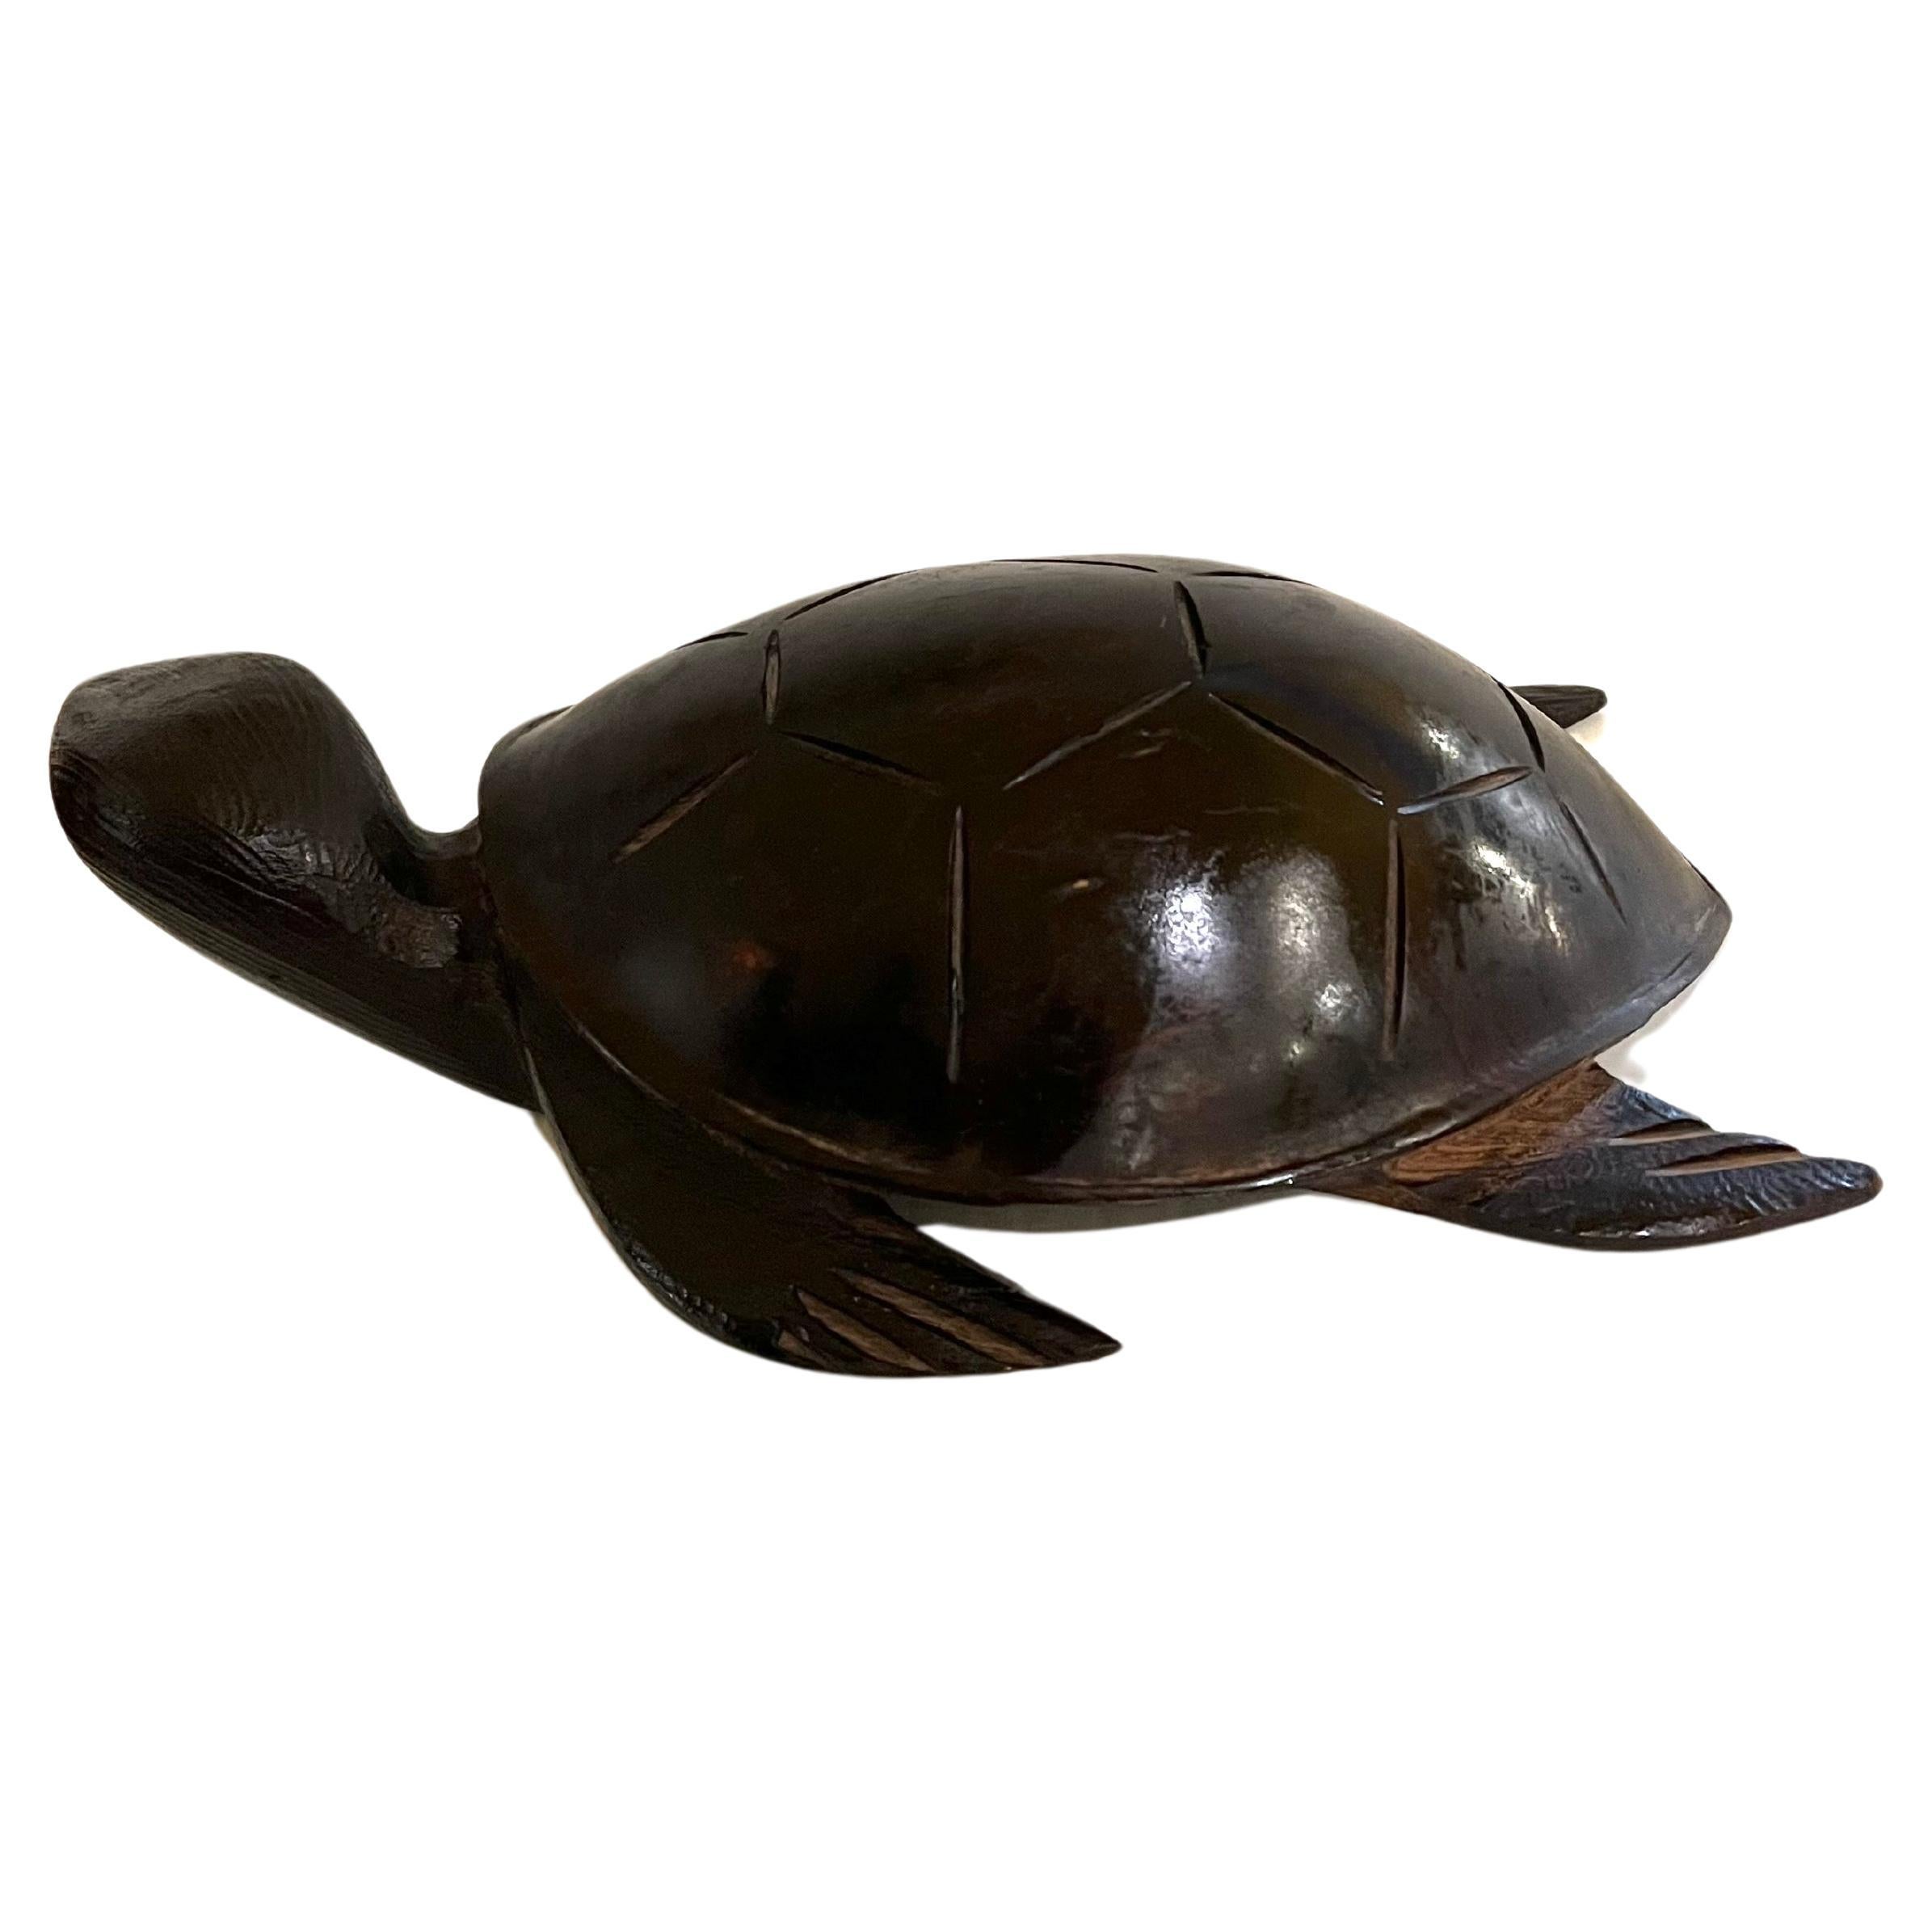 Magnifique sculpture de tortue exsotique en bois de fer sculptée à la main